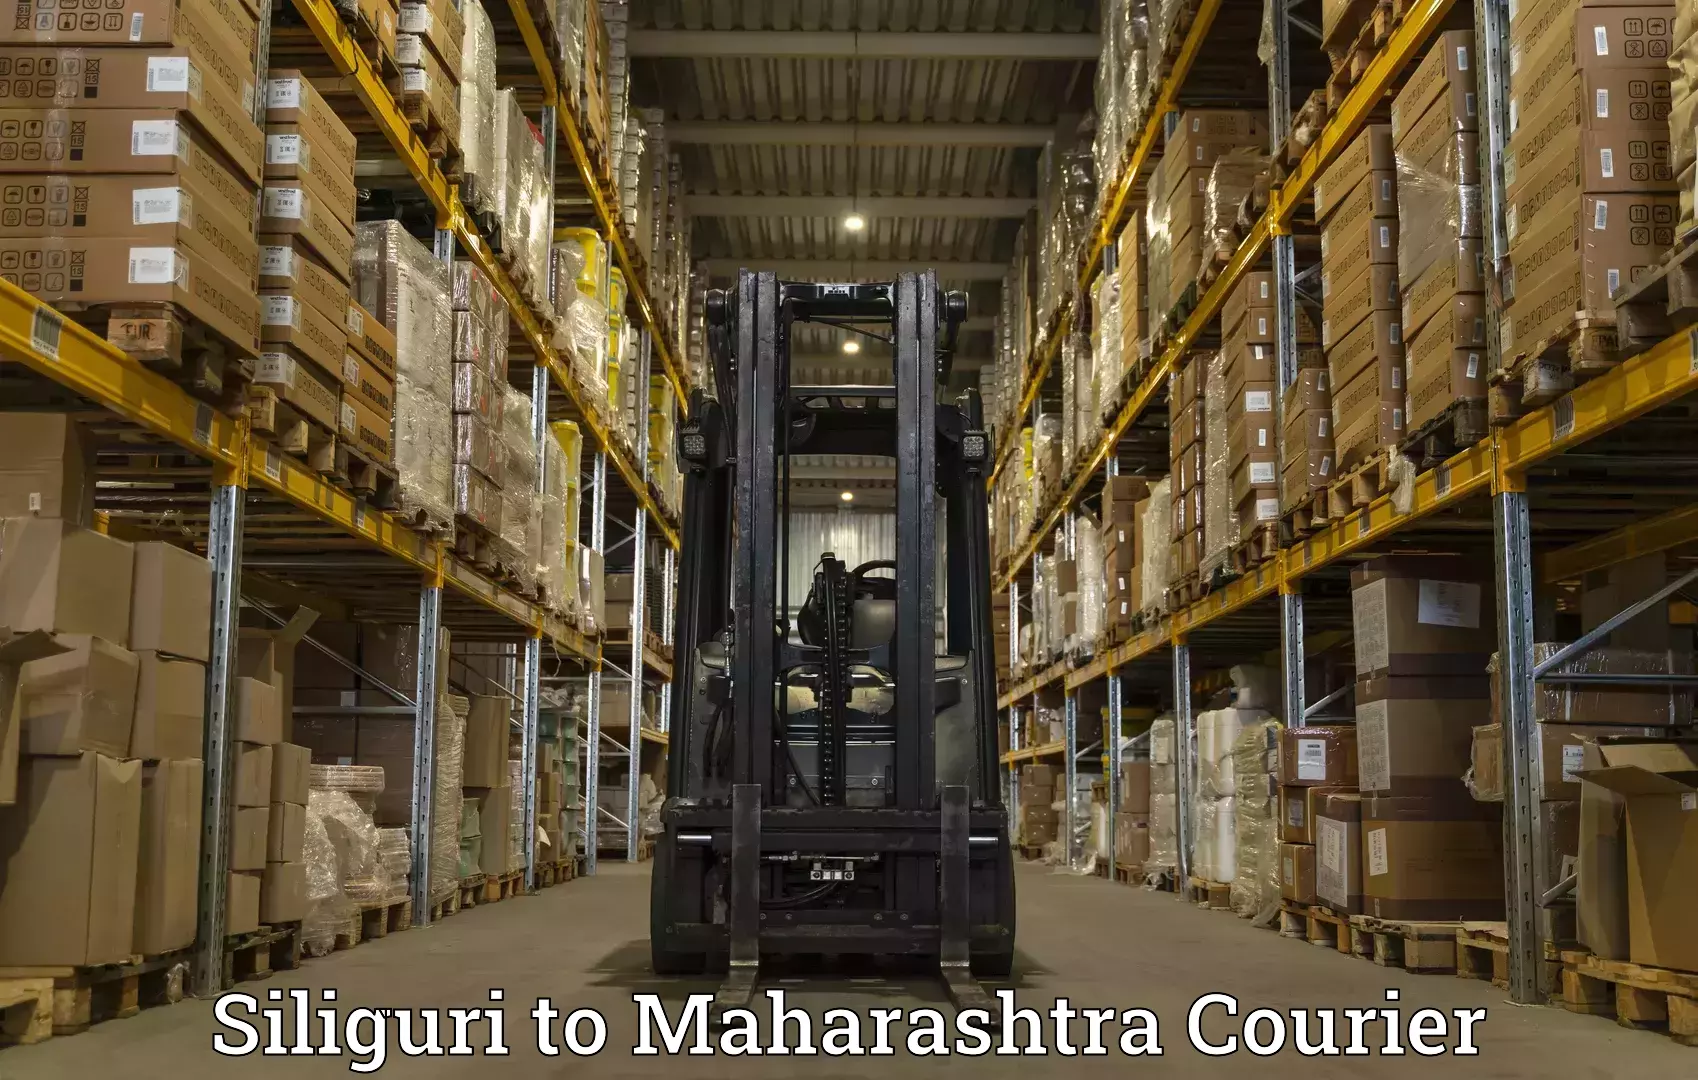 Customer-centric shipping Siliguri to Homi Bhabha National Institute Mumbai